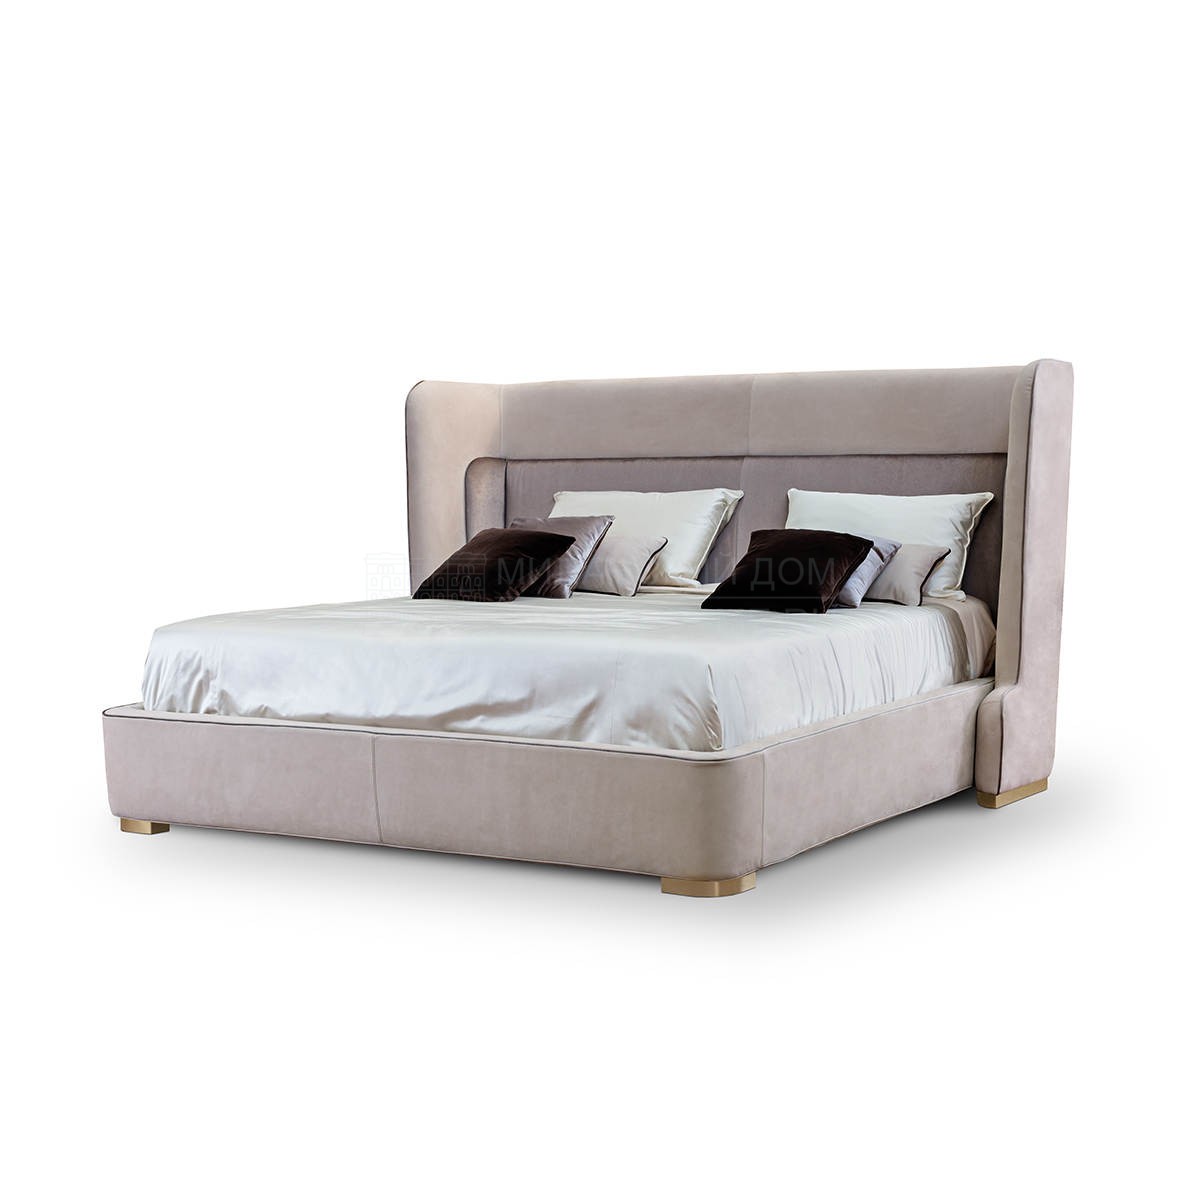 Двуспальная кровать Noir bed из Италии фабрики TURRI